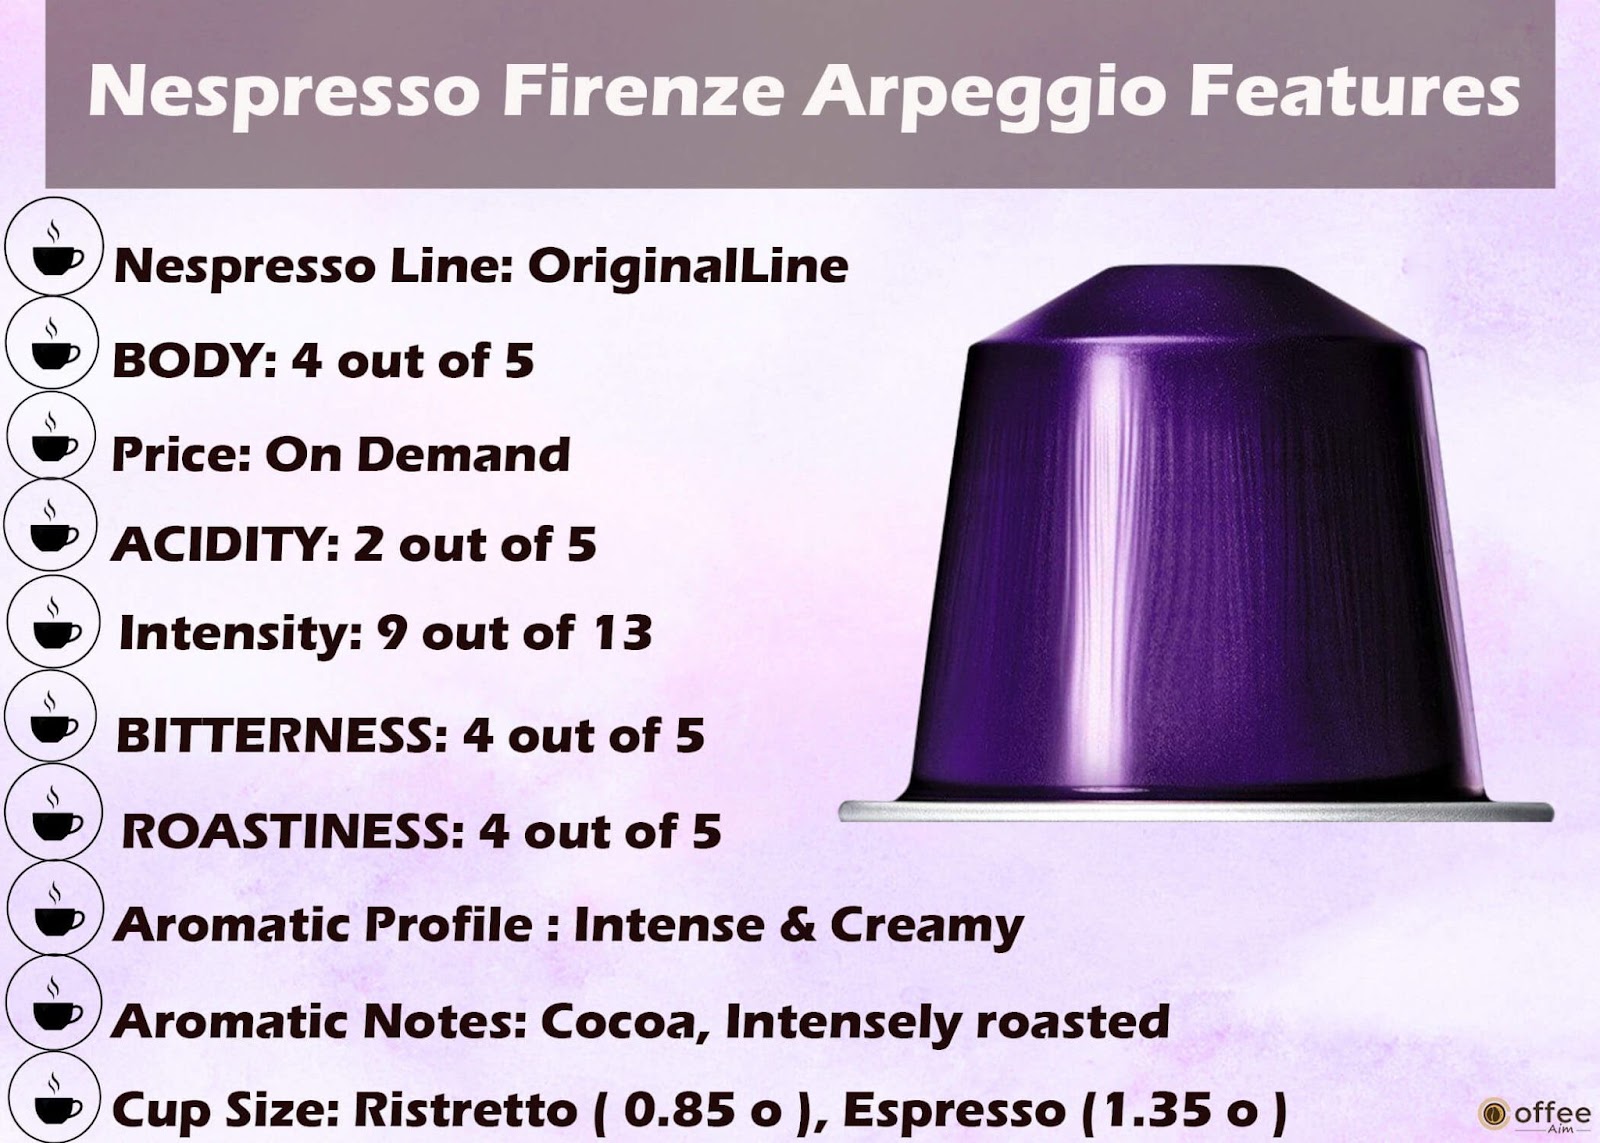 Features Chart of Nespresso Ispirazione Firenze Arpeggio Original Line Capsule.